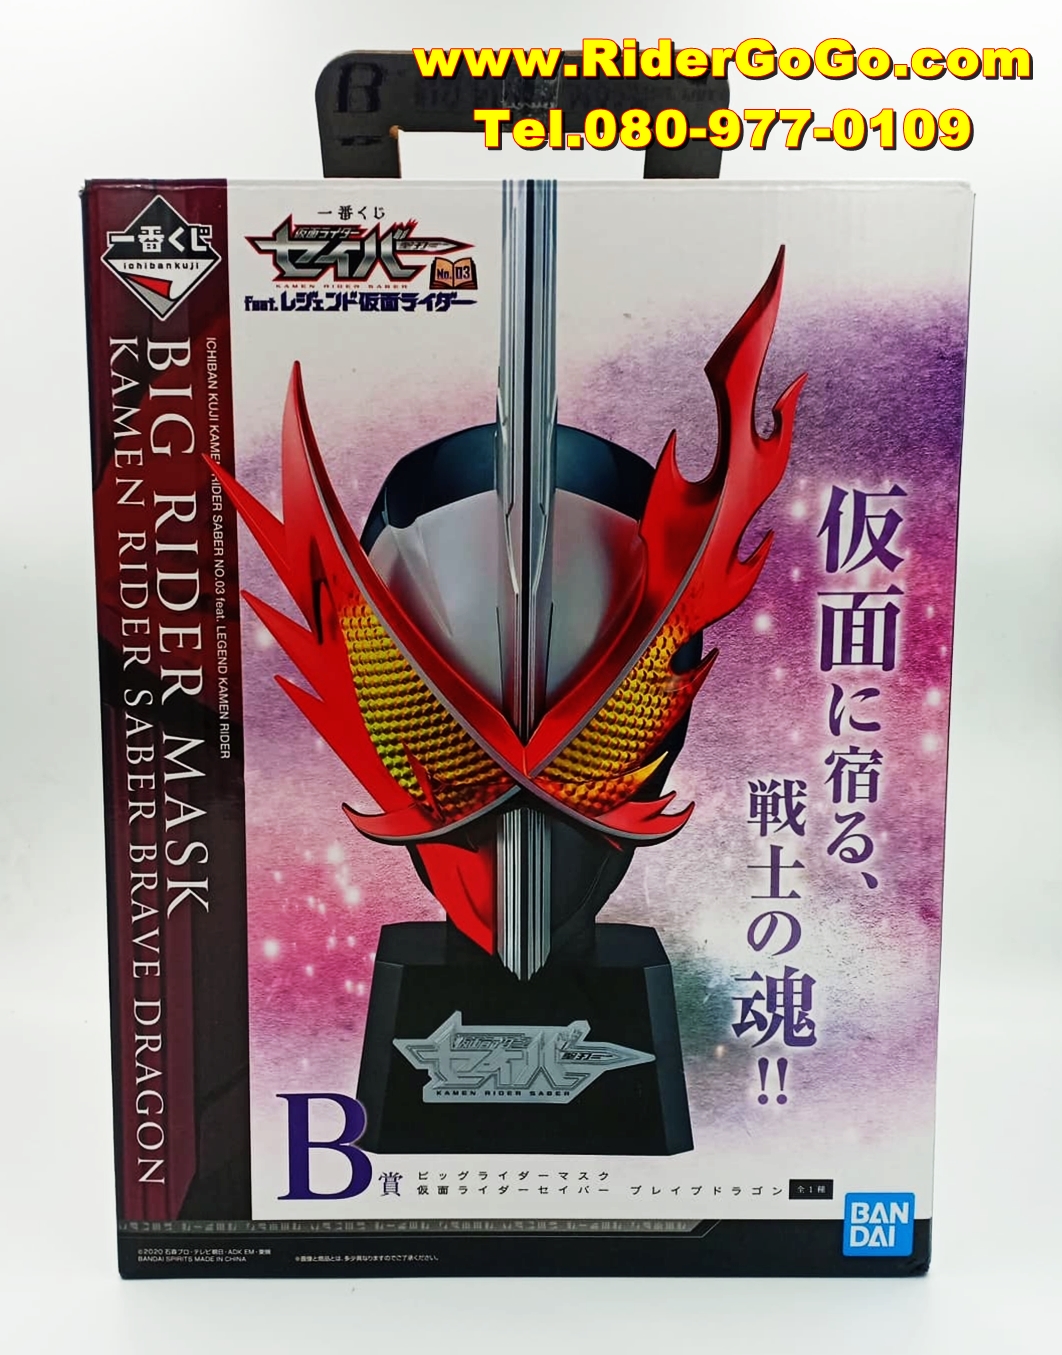 หัวมาสค์ไรเดอร์เซเบอร์ เบรฟดราก้อน Big Rider Mask Kamen Rider Saber Brave Dragon Ichiban Kuji ของใหม่ของแท้Bandai ประเทศญี่ปุ่น รูปที่ 1